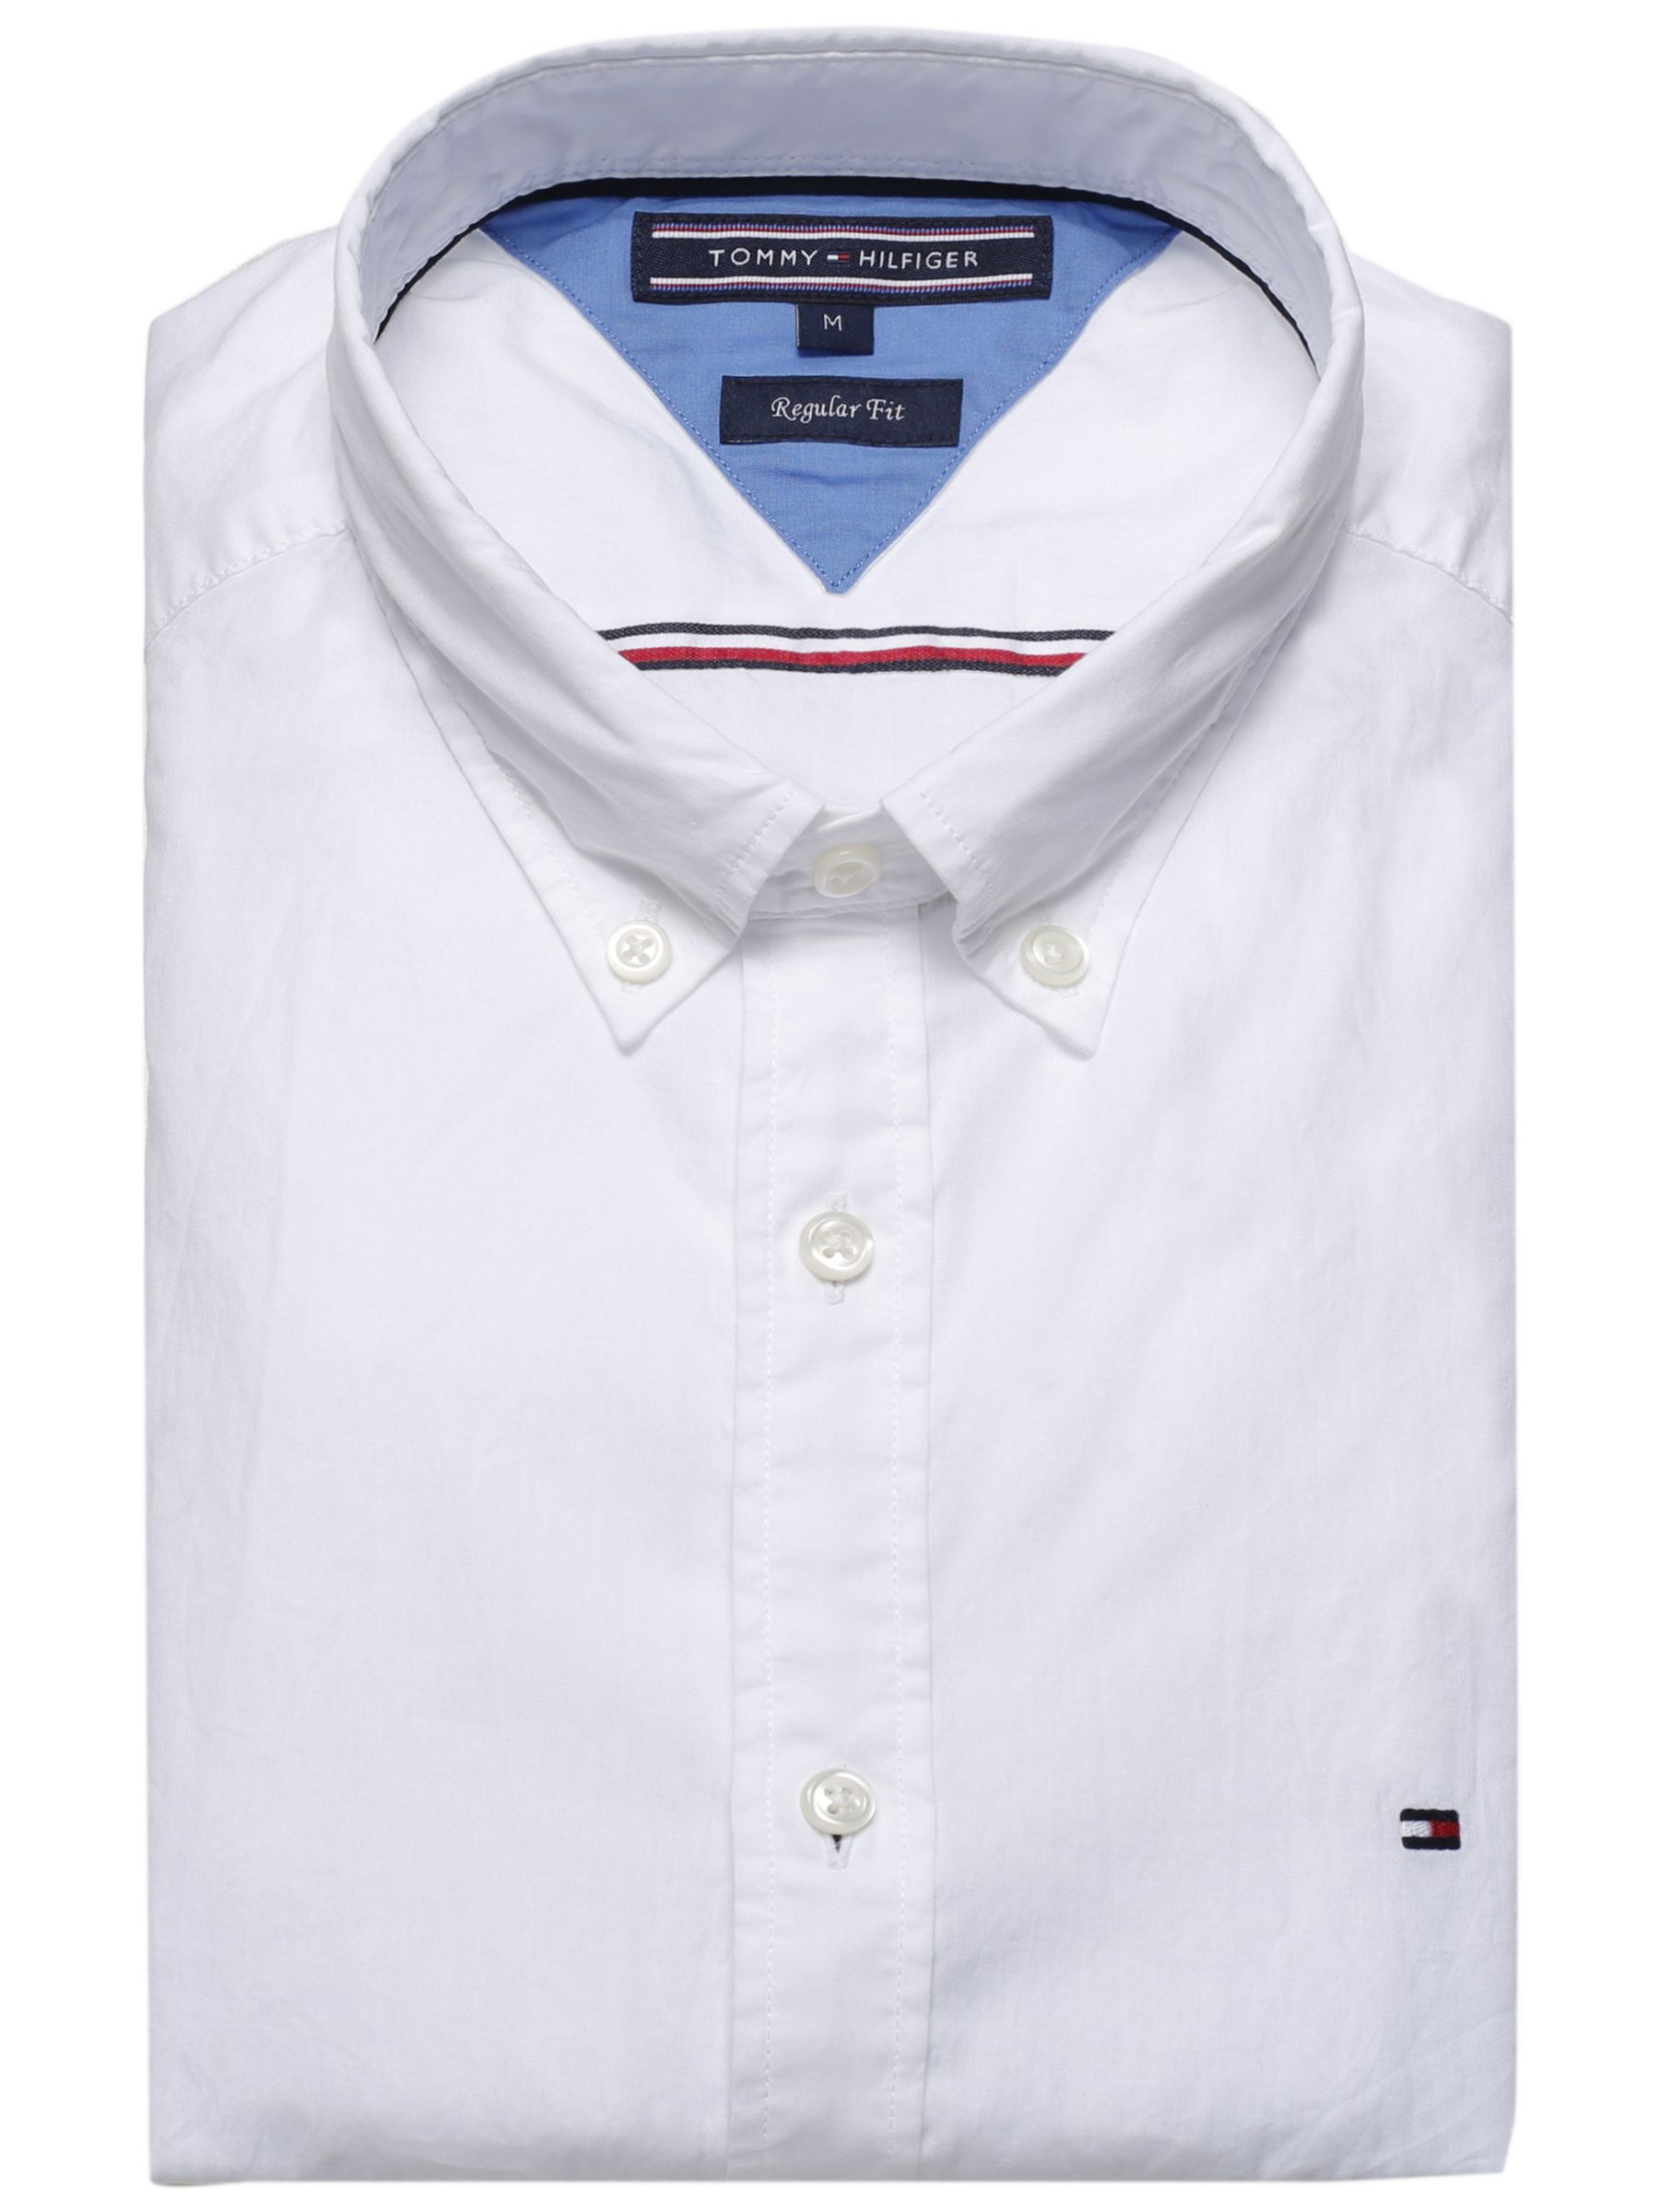 Tommy Hilfiger Lightweight Cotton Poplin Shirt, Bright White